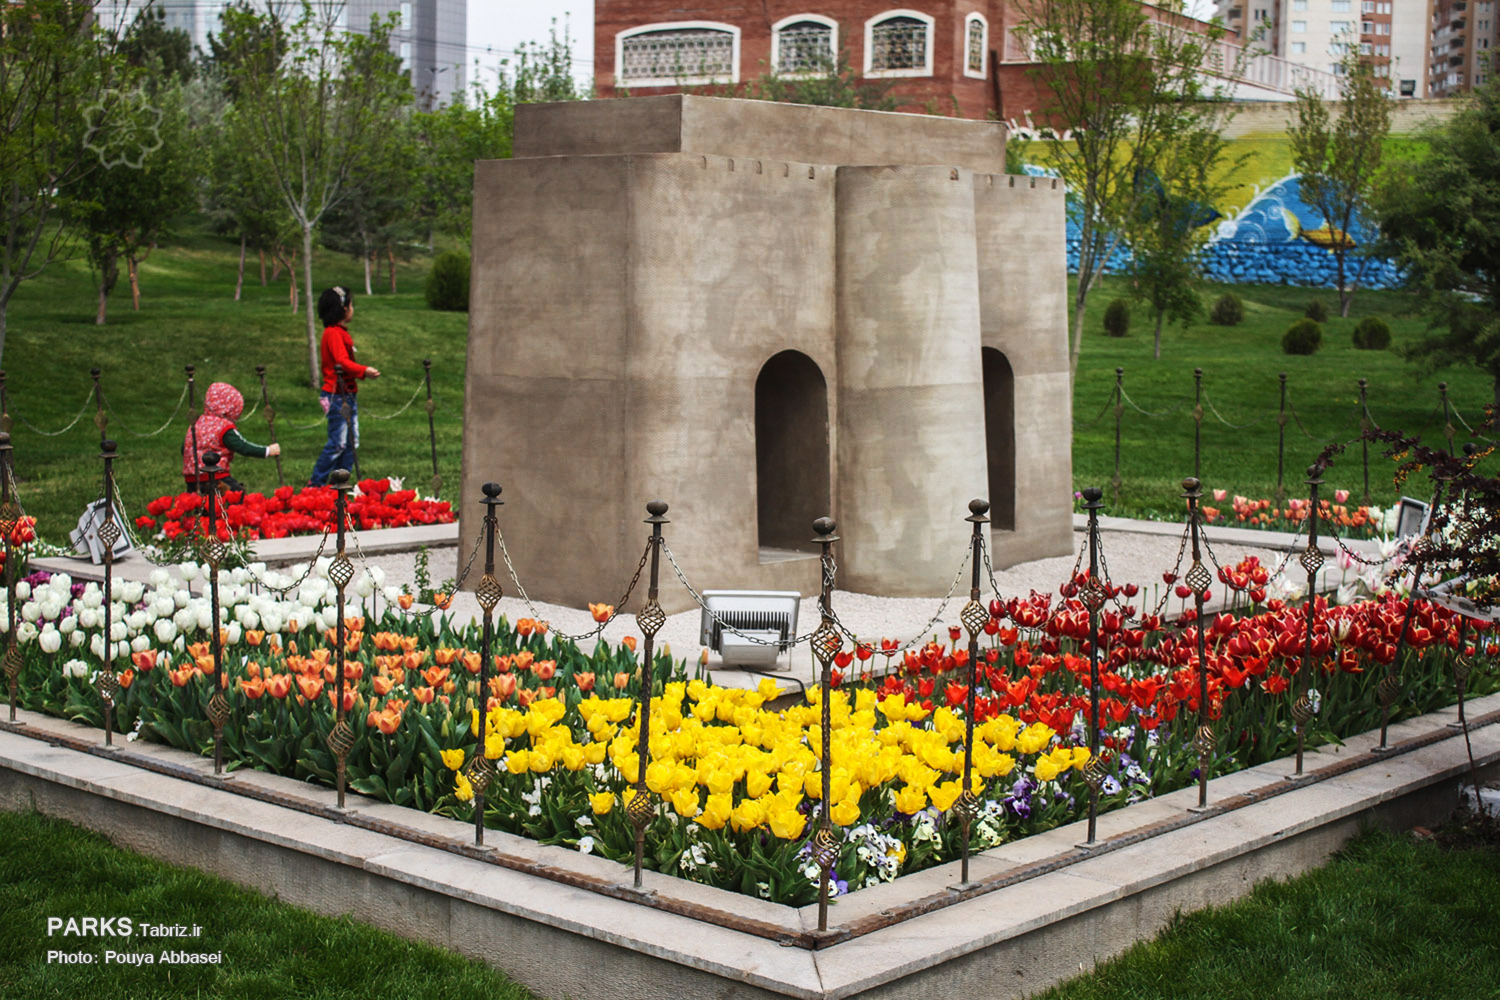 Miniature Park Tabriz